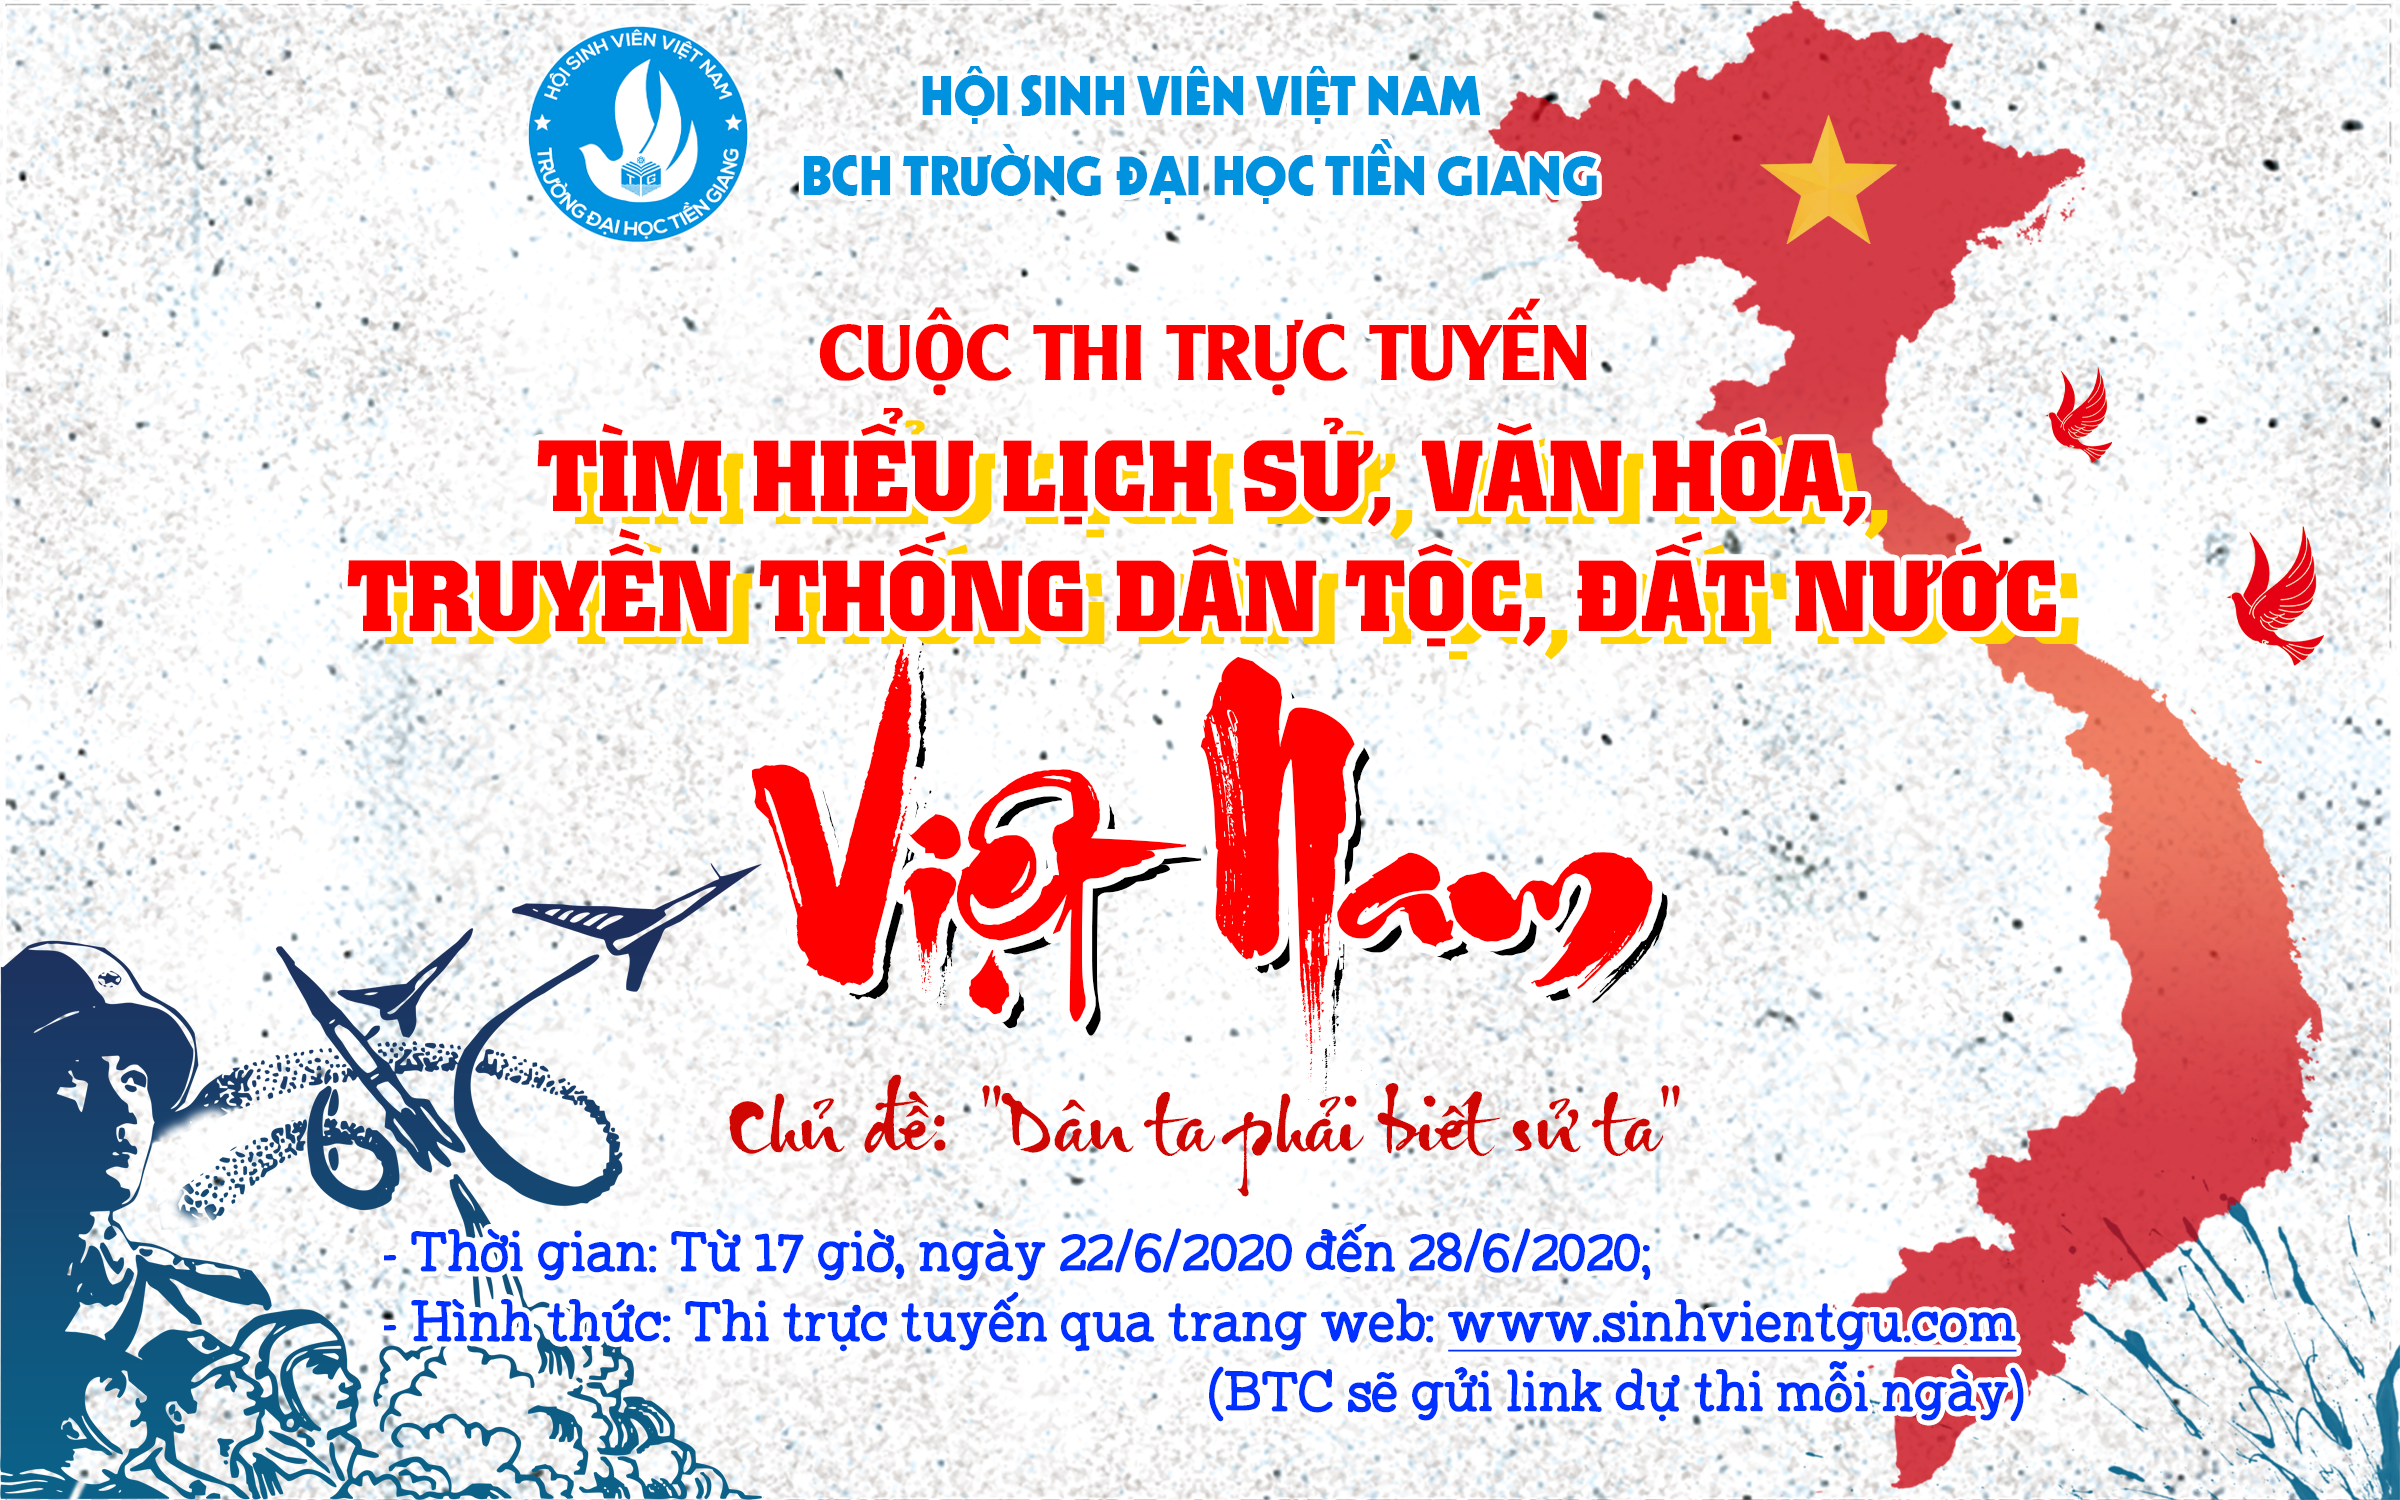 Cuộc thi trực tuyến: Tìm hiểu lịch sử, văn hóa, truyền thống dân tộc, đất nước Việt Nam - Ngày 6